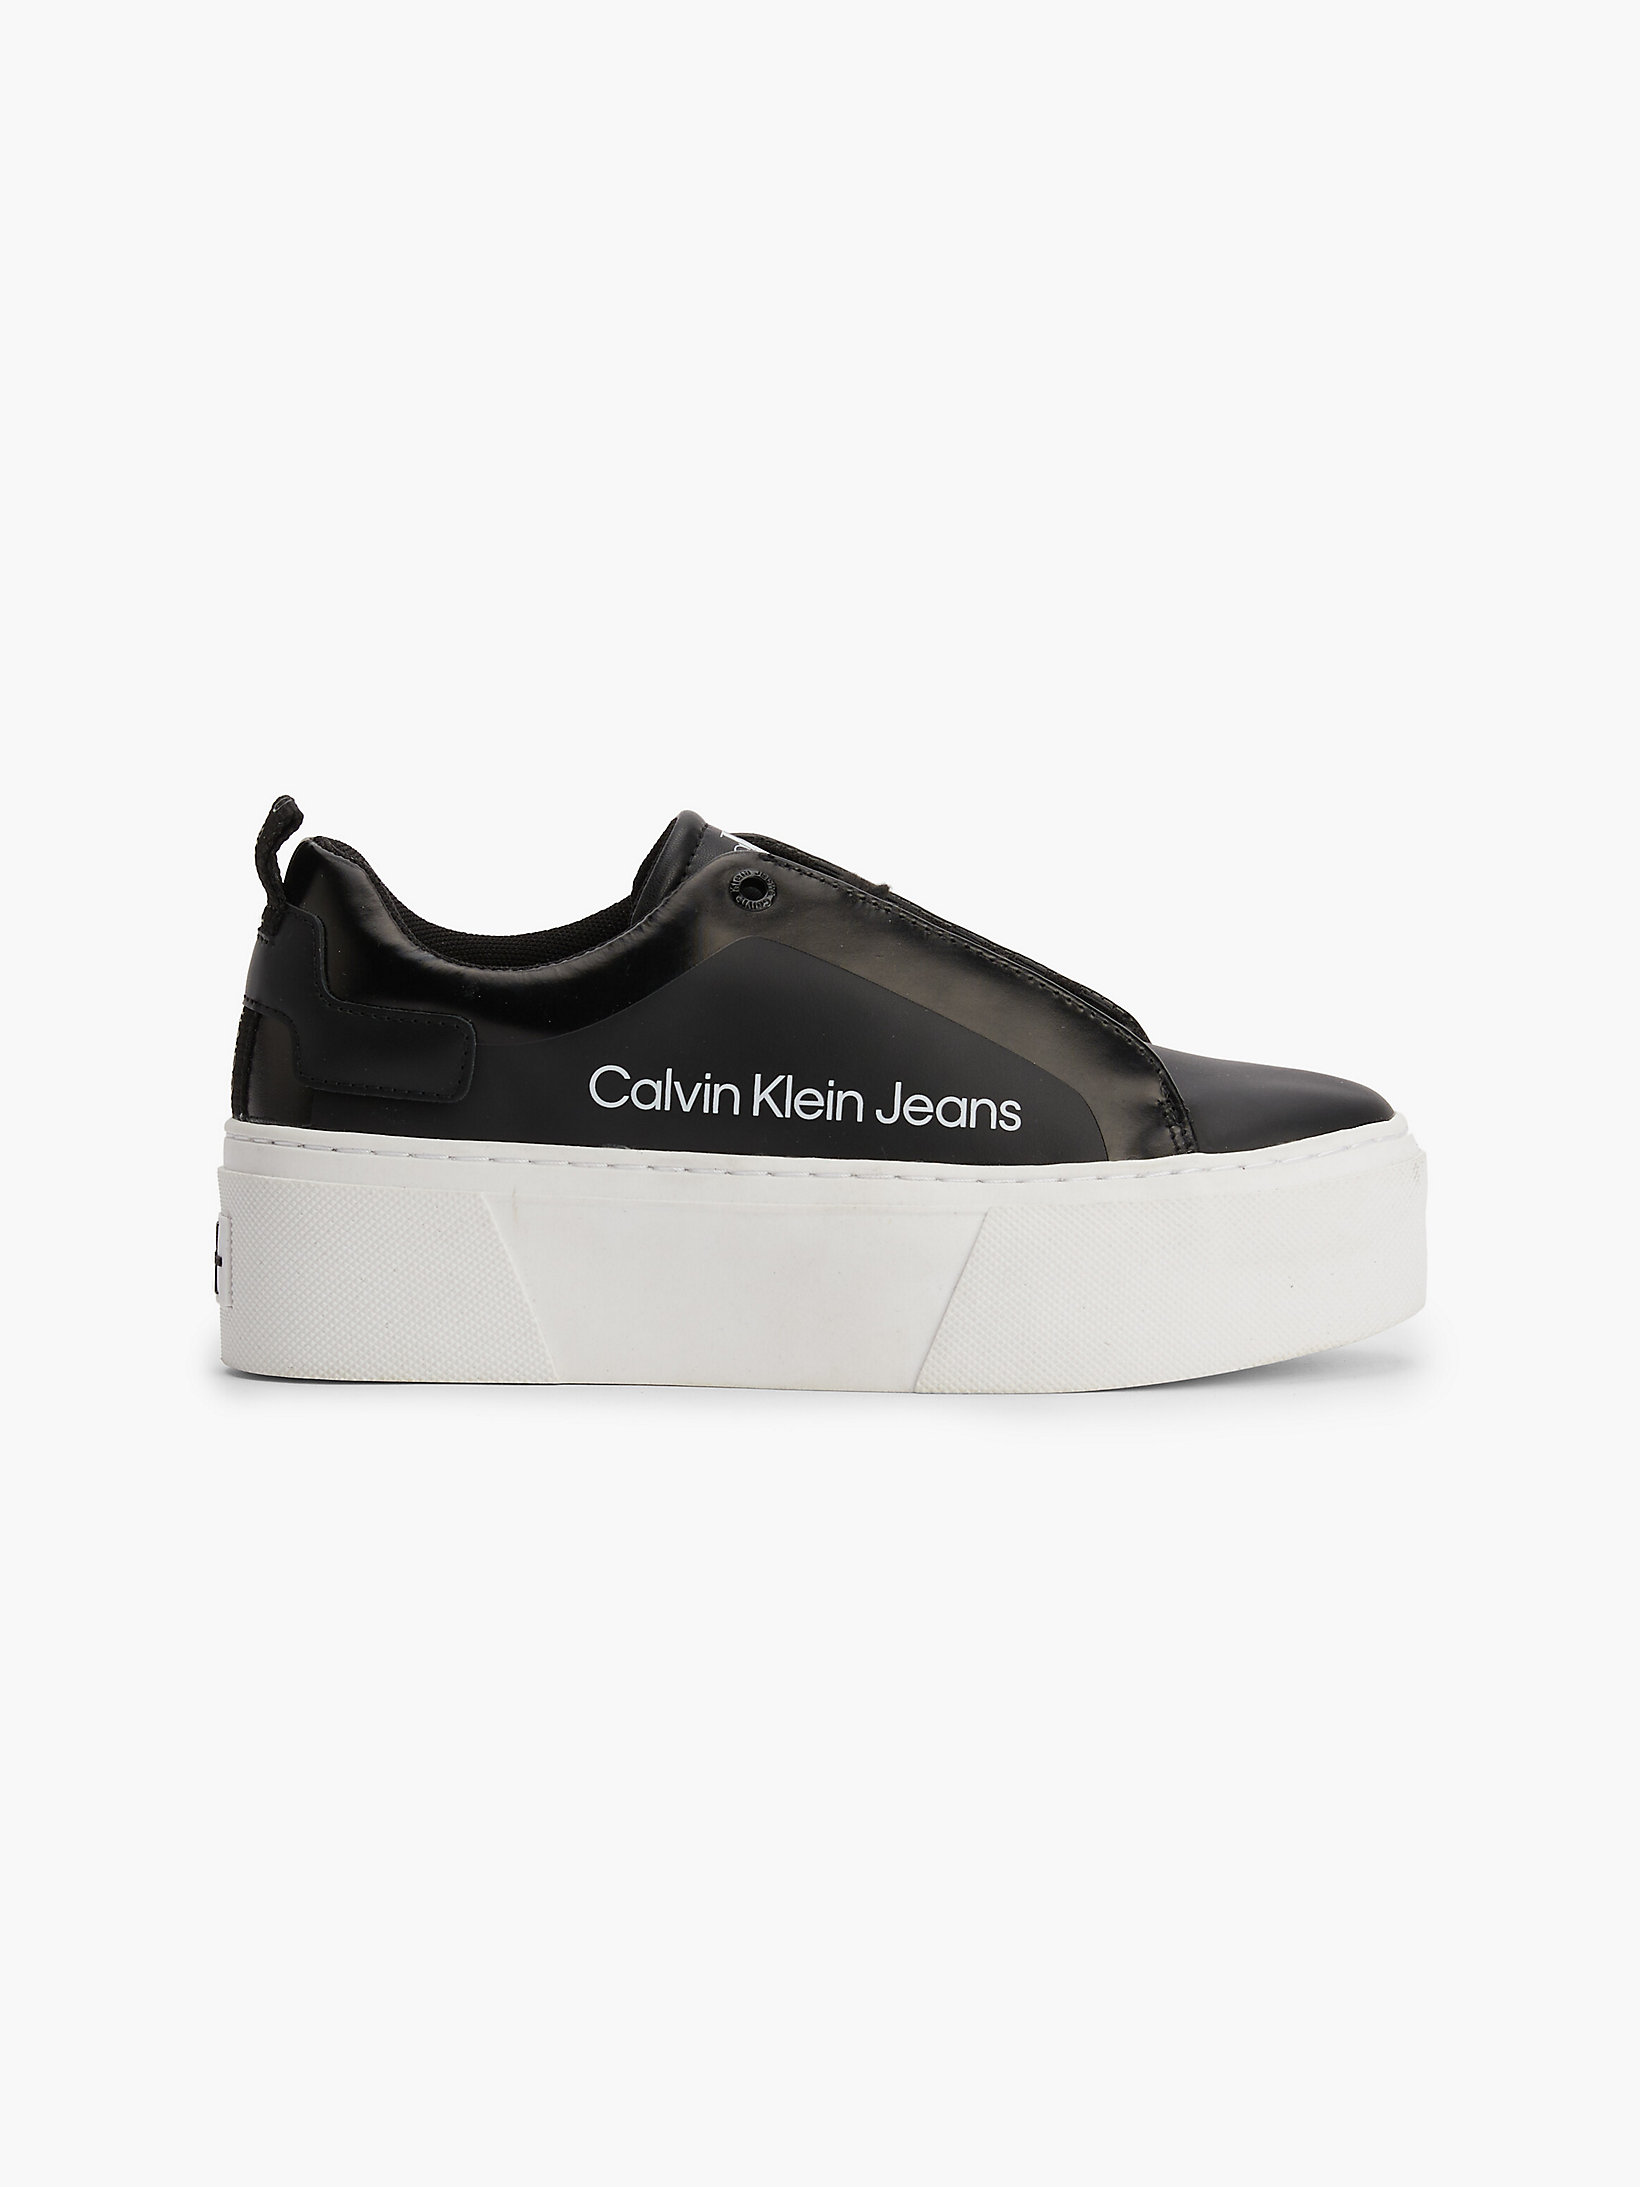 Black Plateau-Sneakers Aus Leder undefined Damen Calvin Klein